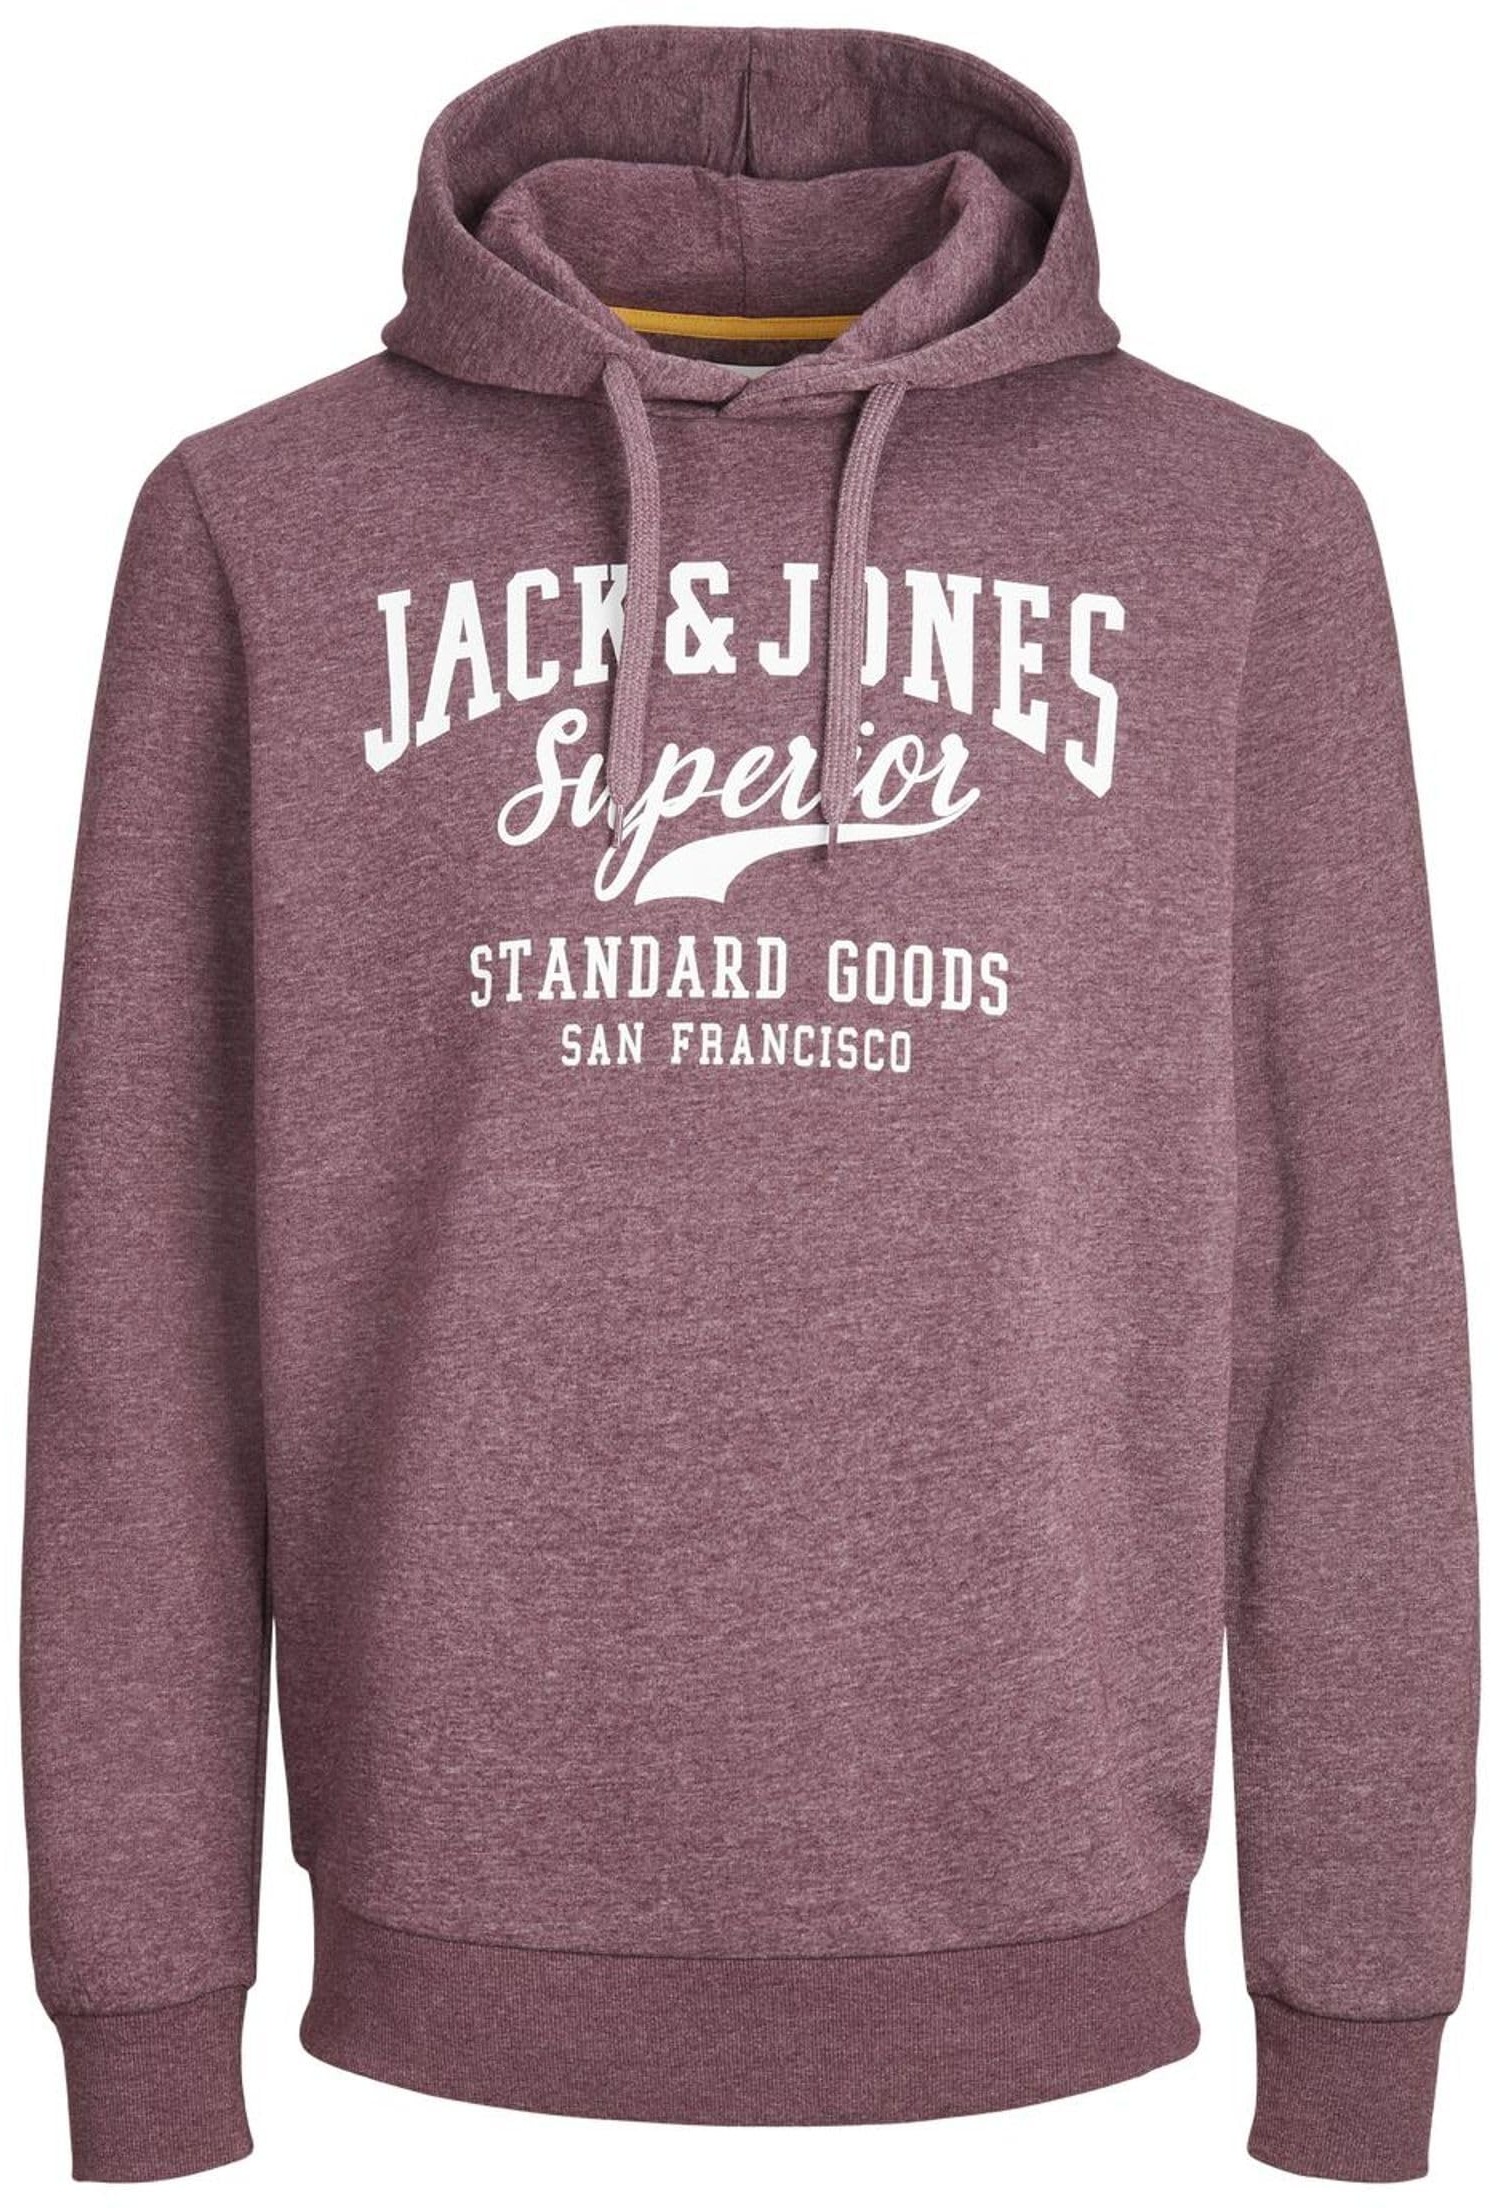 JACK & JONES Herren Hoodie Sweater mit Logo Print Druck Pullover Kapuzen Sweatshirt JJELOGO